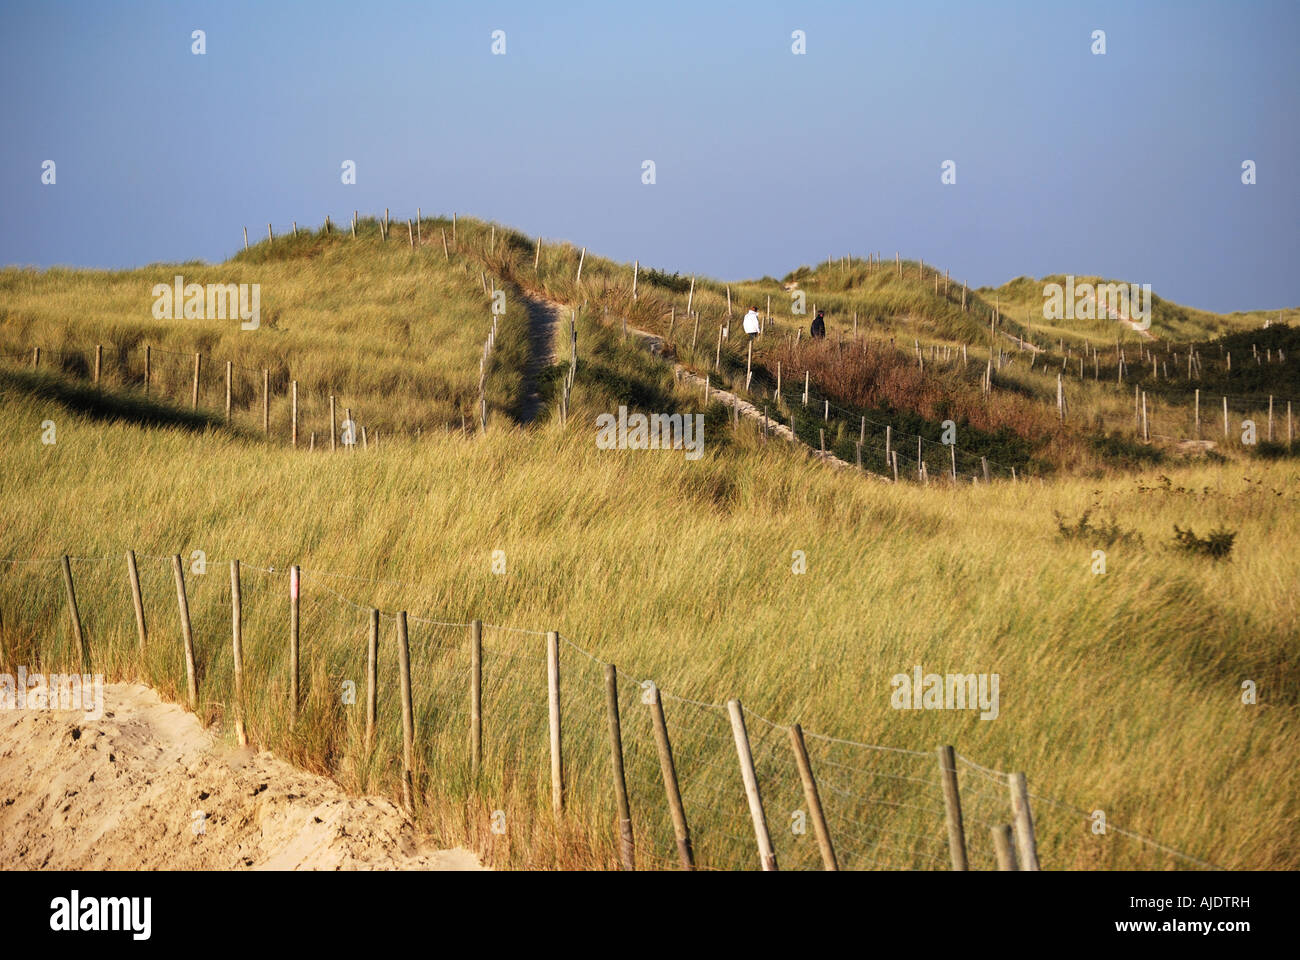 Conservation des aires protégées de dunes de sable, Le Touquet-Paris-Plage (Le Touquet), Pas de Calais, Nord Pas de Calais, France Banque D'Images